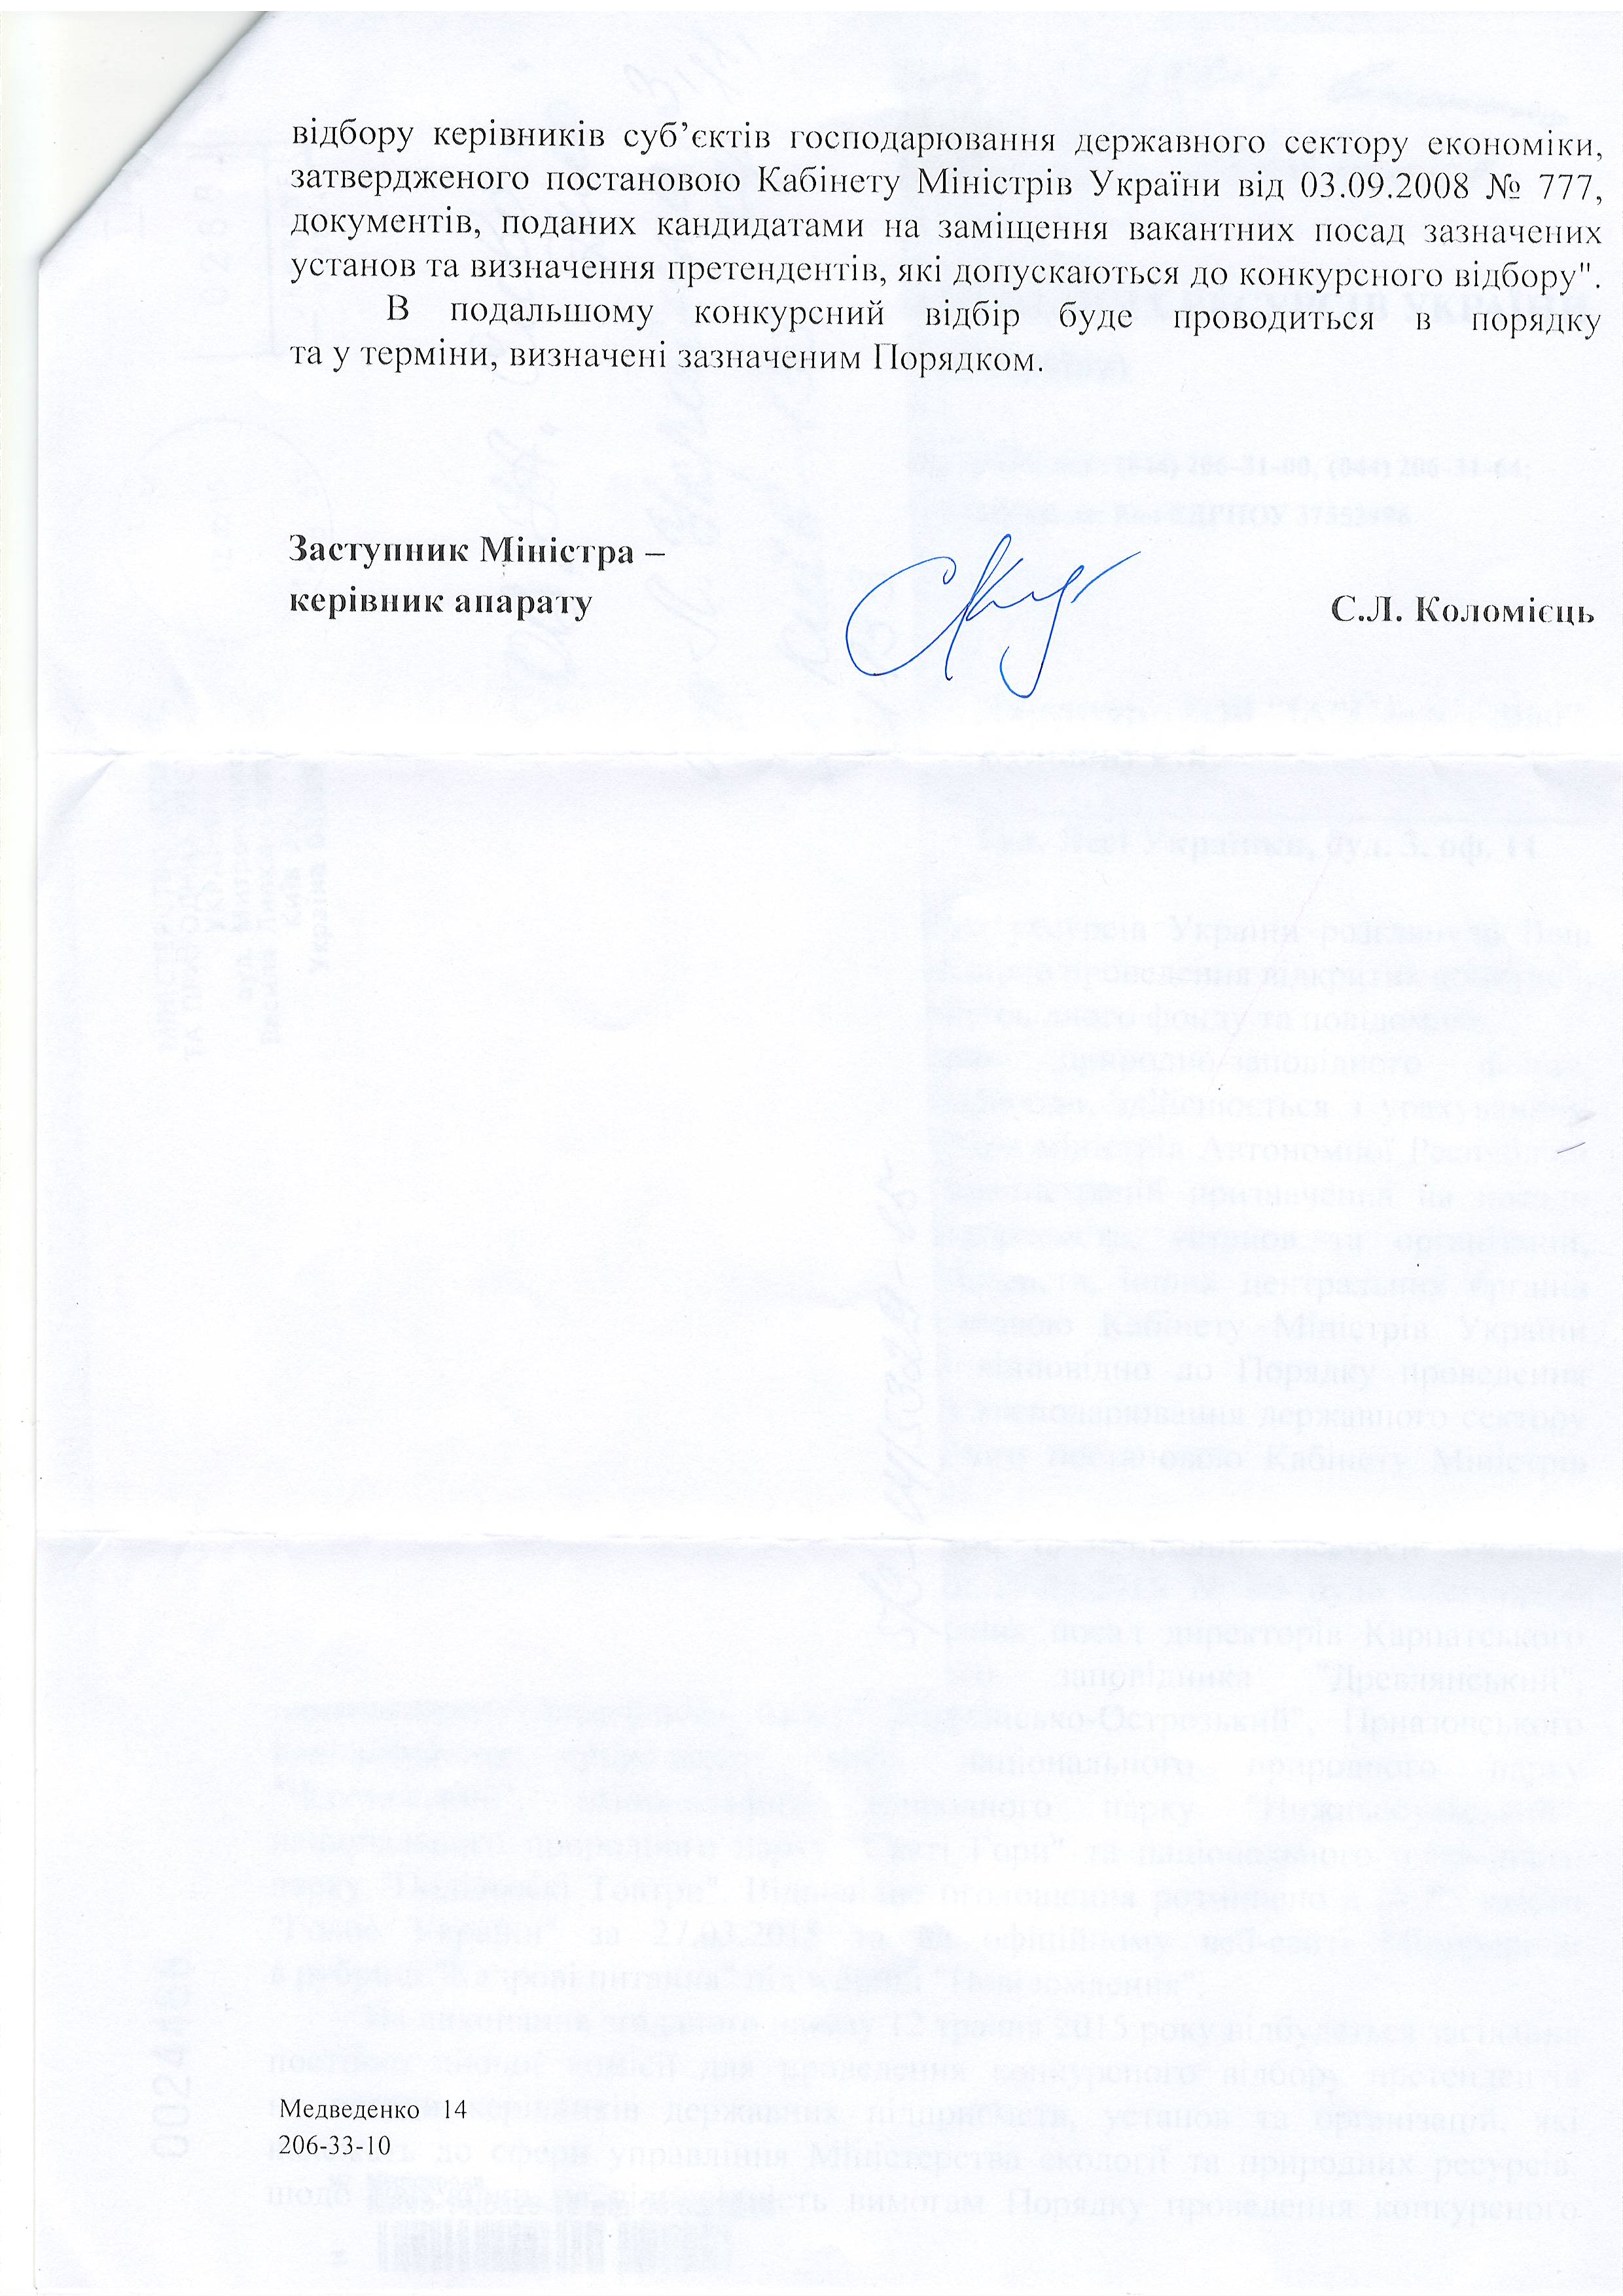 лист міністерства екології та природних ресурсів України від 08.05.2015